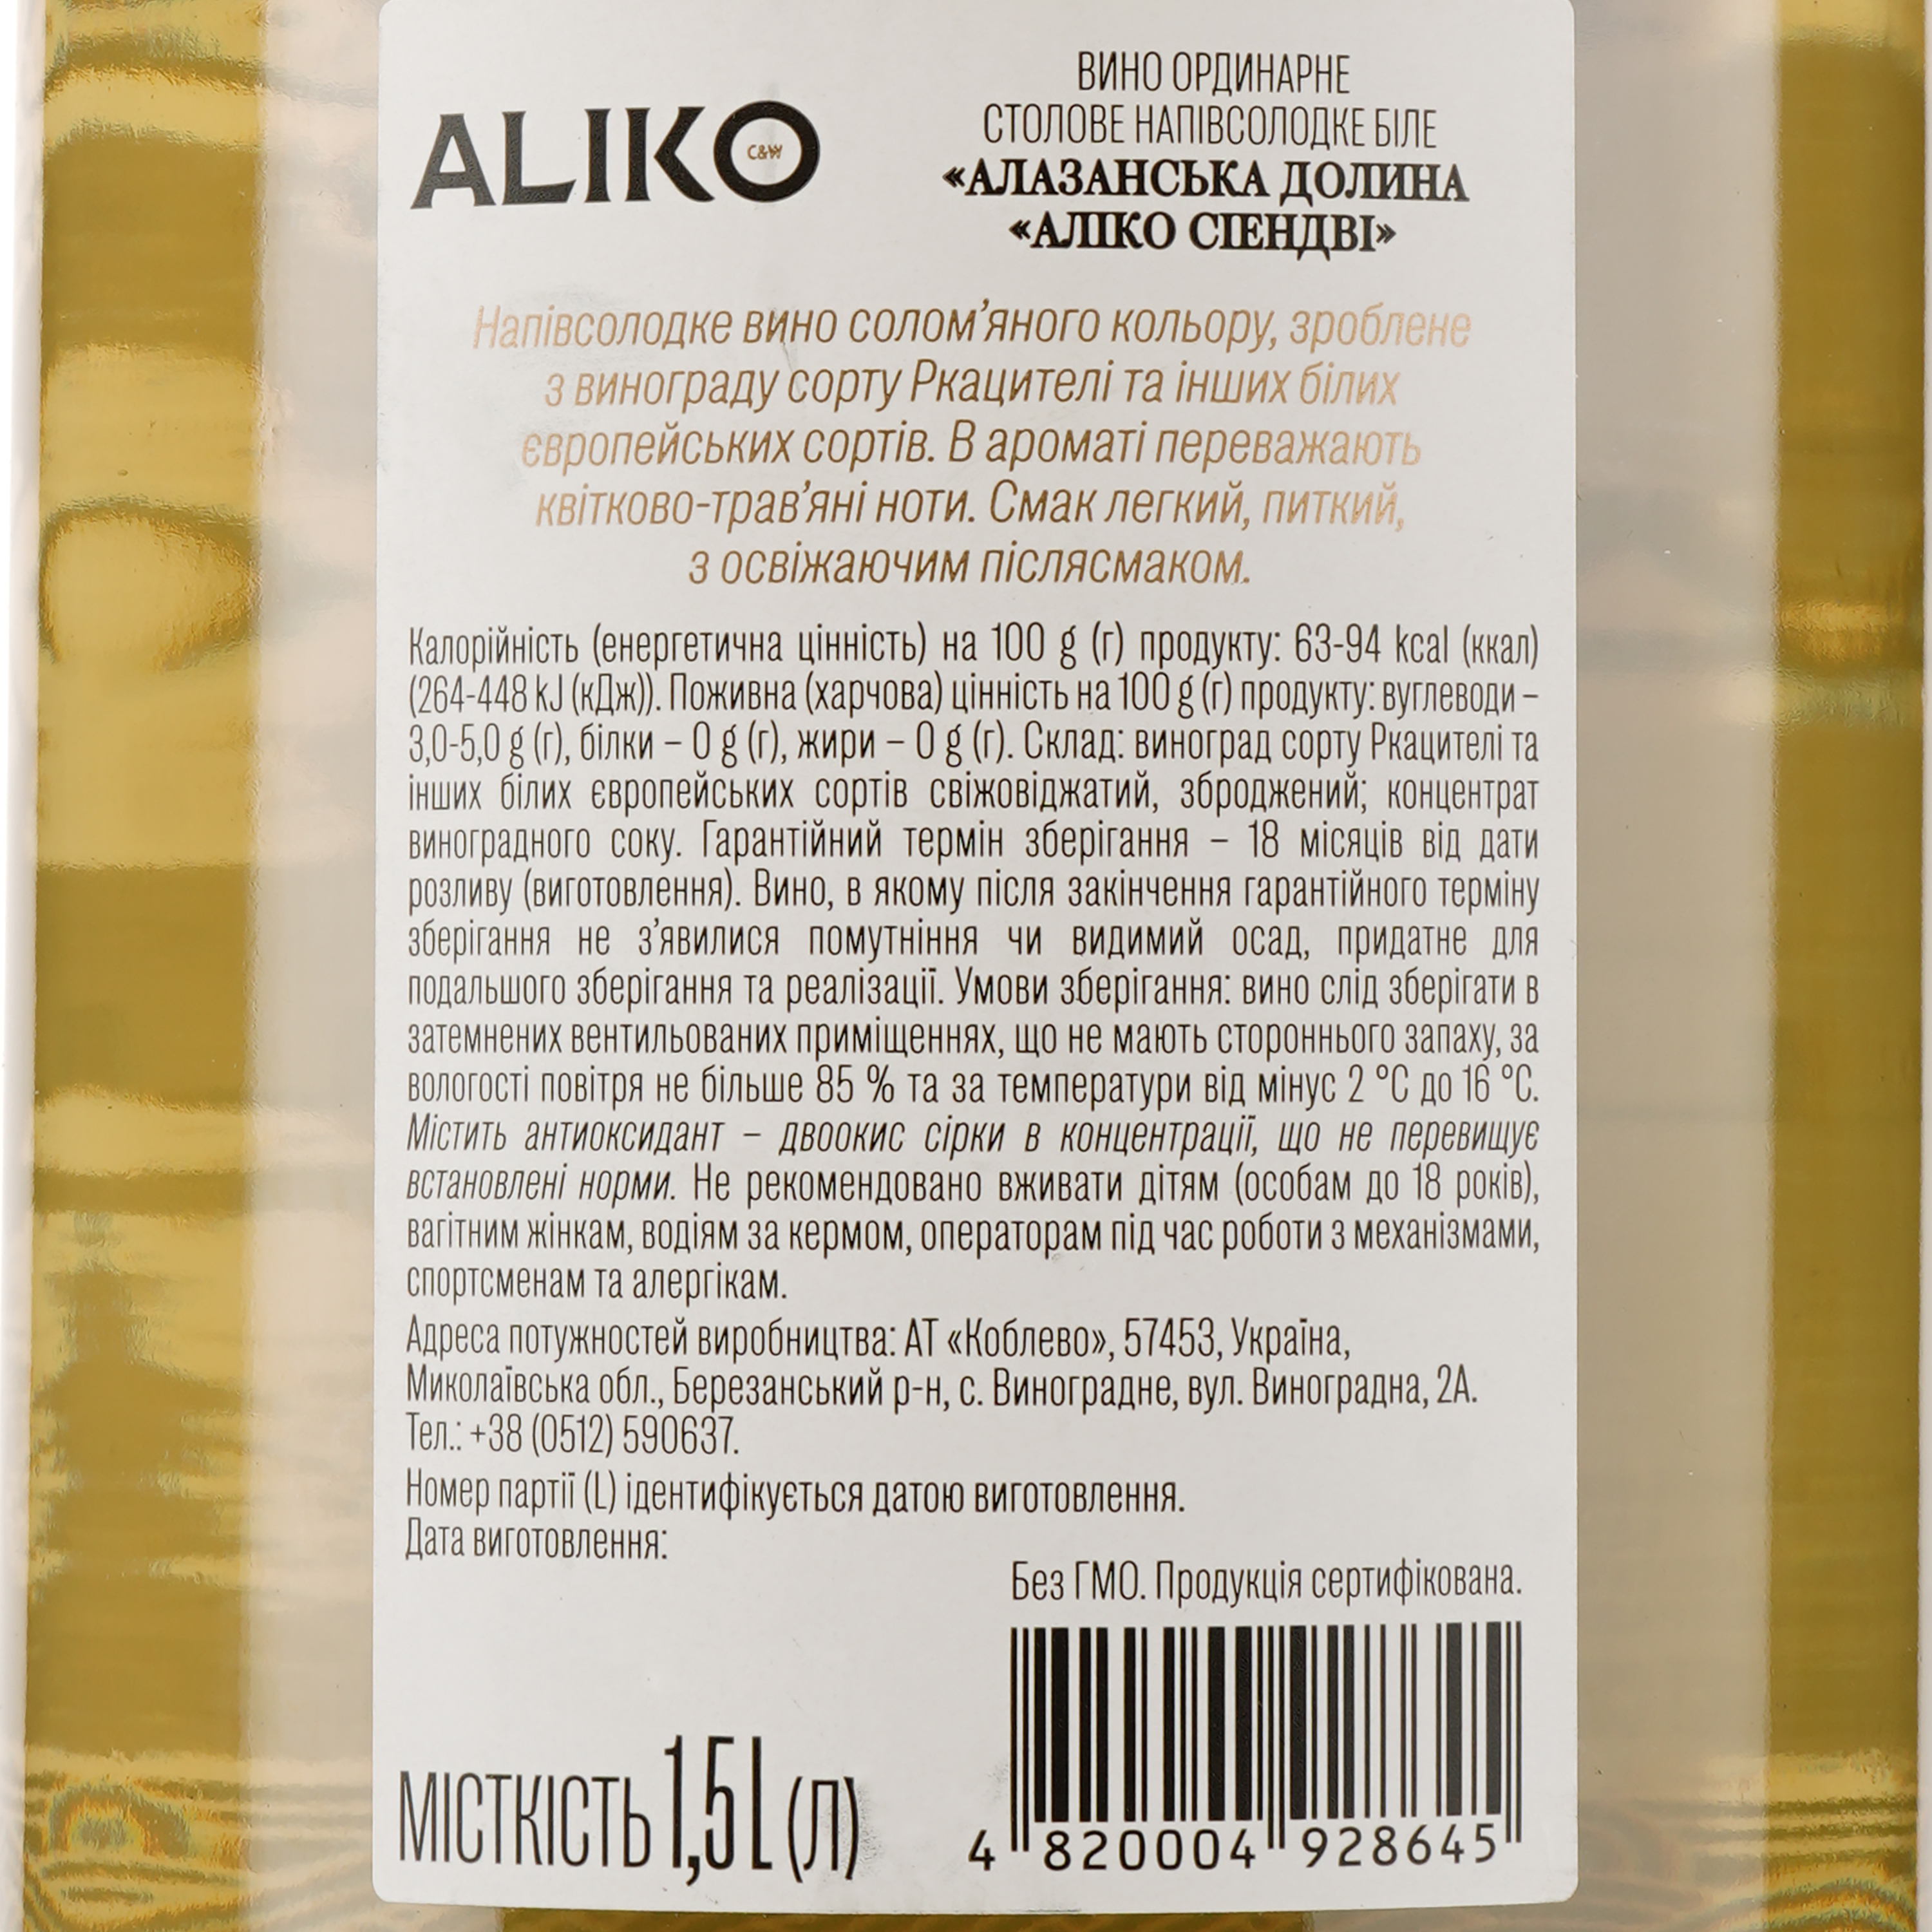 Вино Aliko Алазанская долина, белое, полусладкое, 9-13%, 1,5 л - фото 3